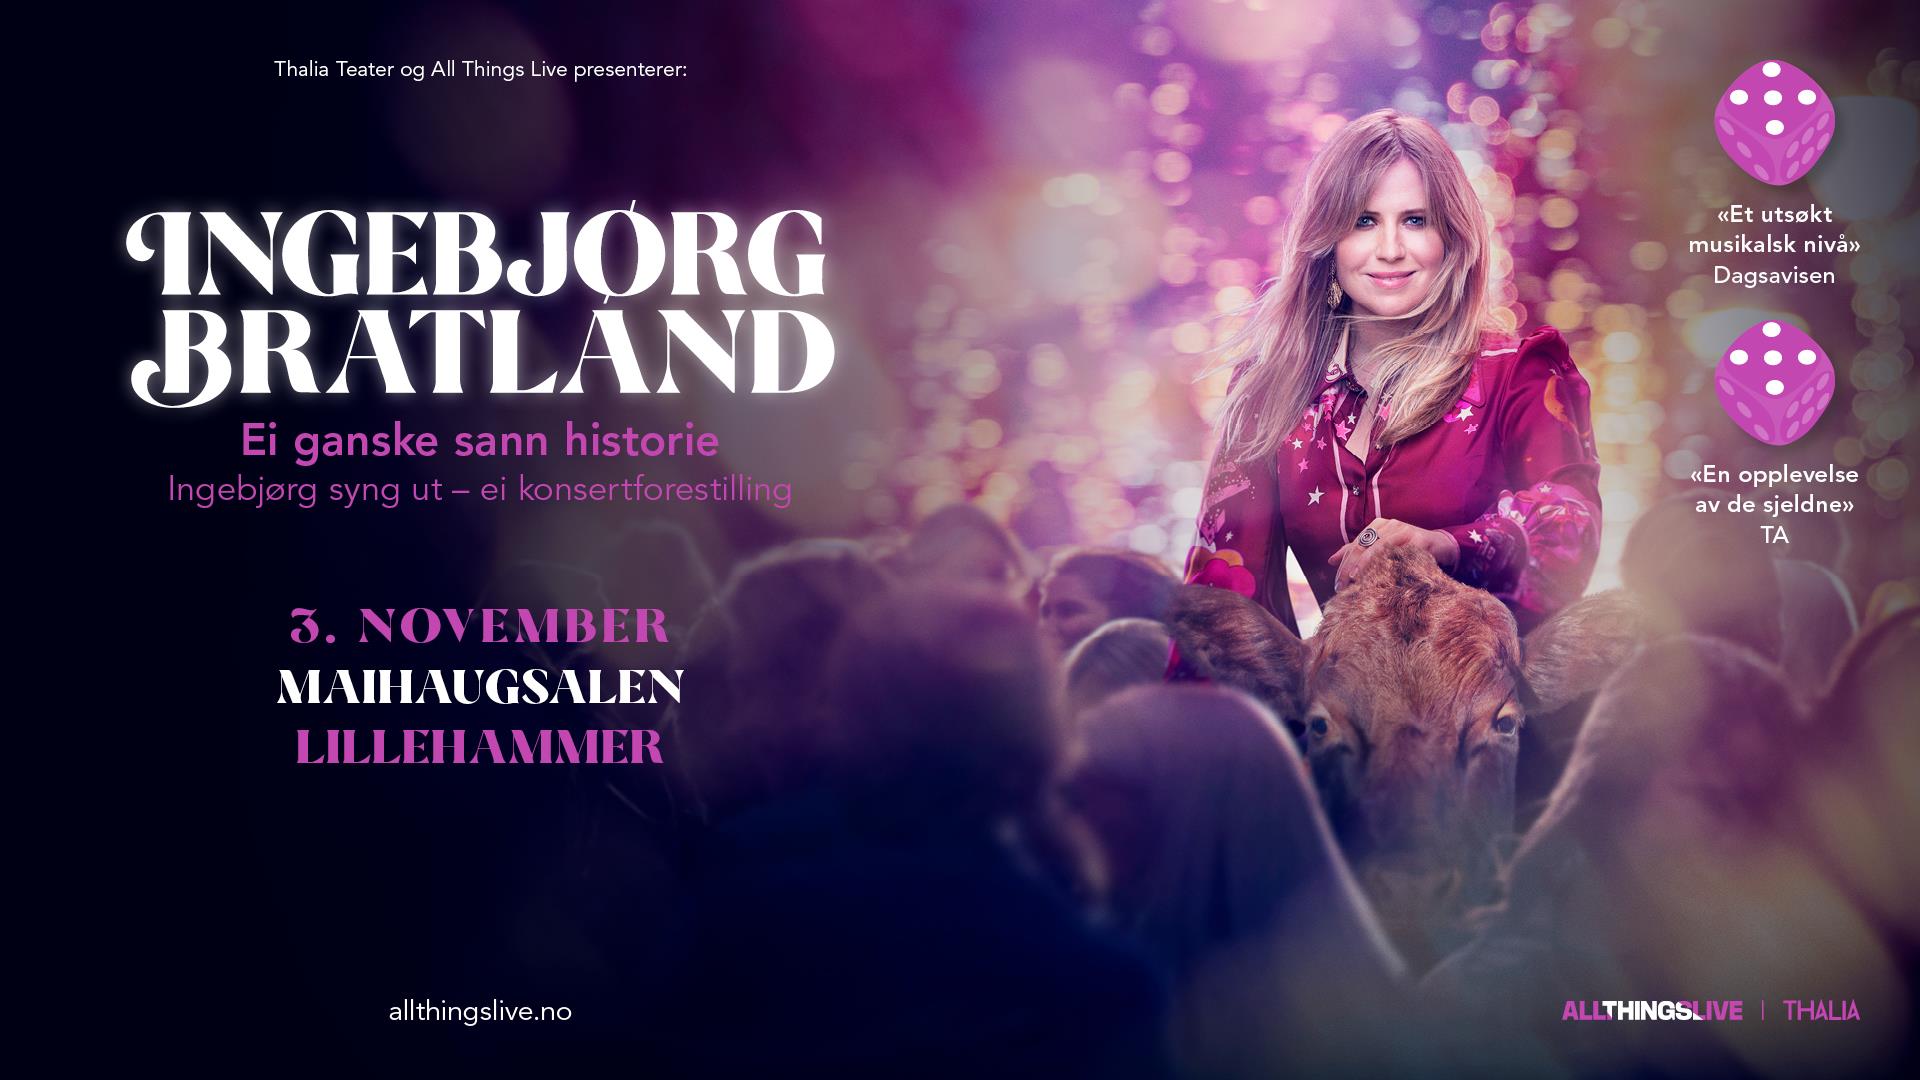 Konsert med Ingebjørg Bratland